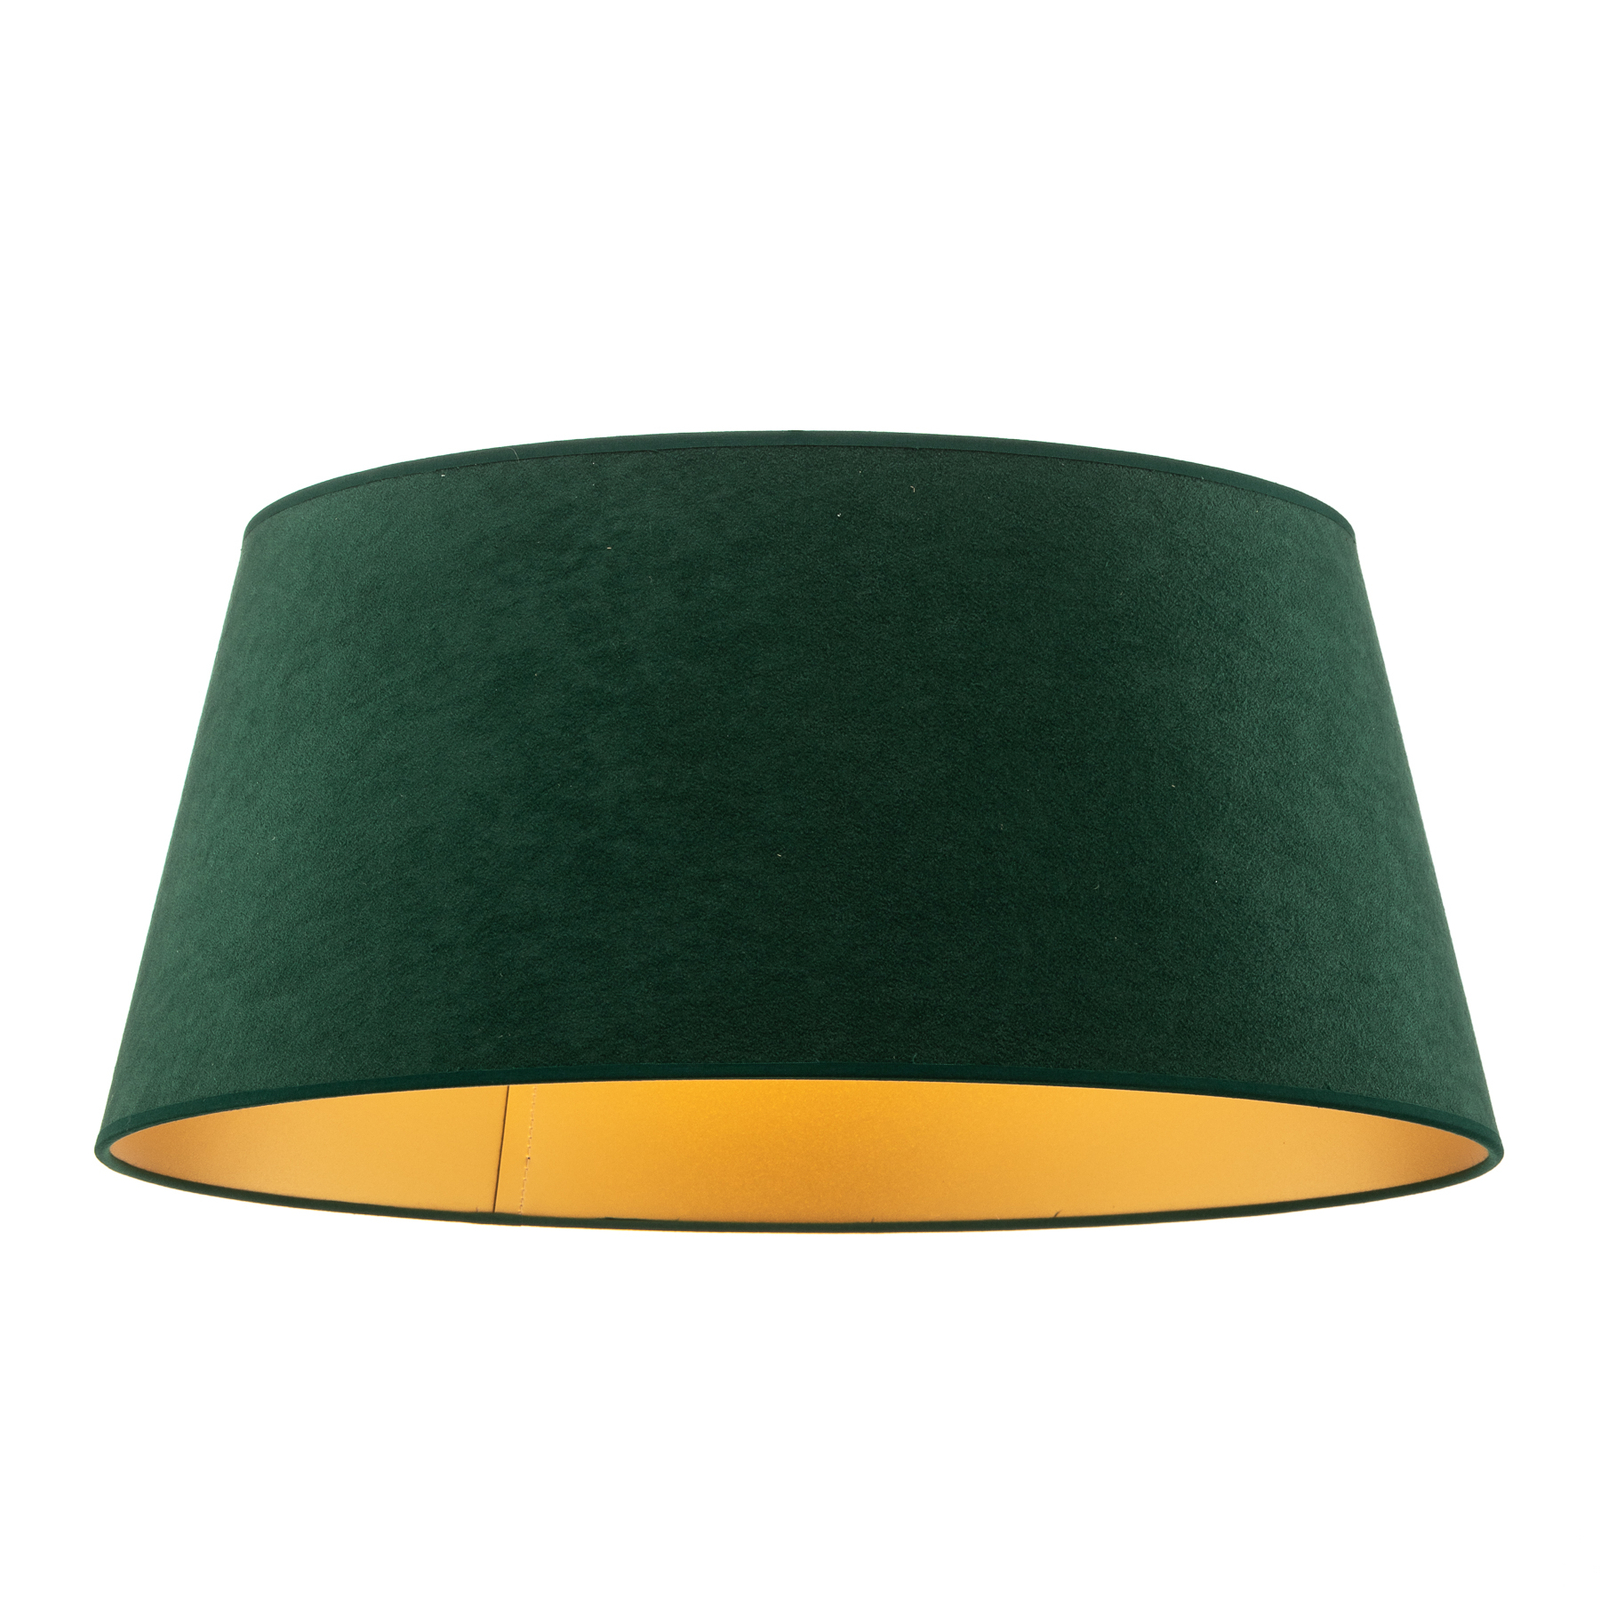 Cone lámpaernyő 22,5 cm magas, sötétzöld/arany